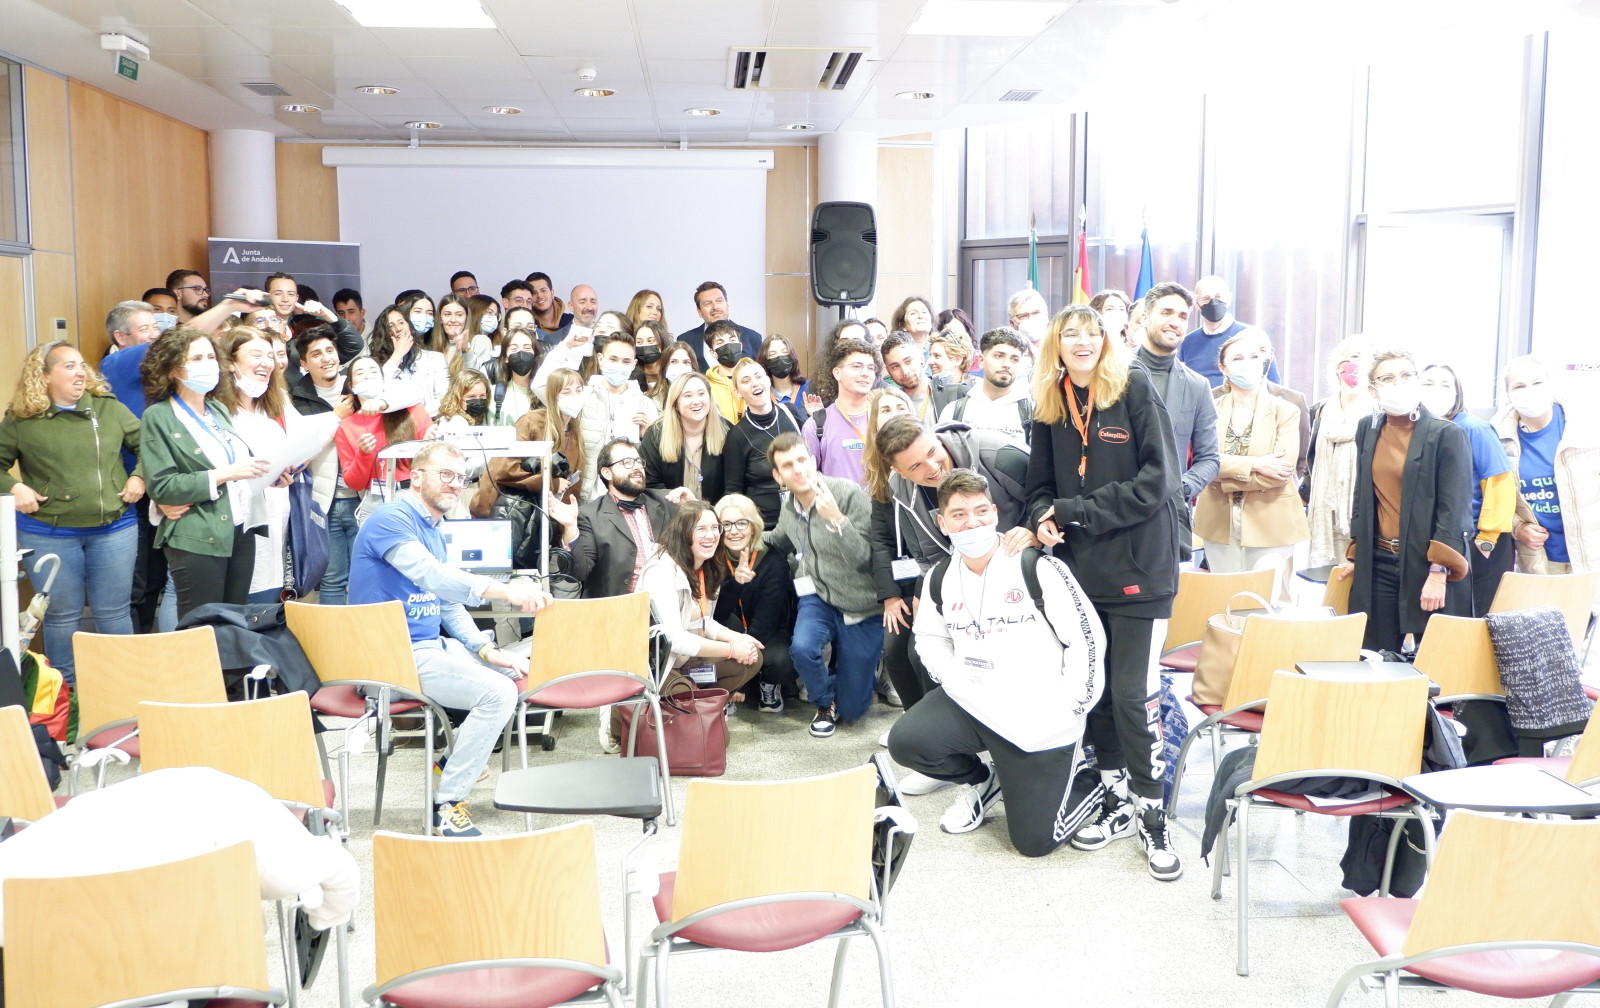 El concurso ‘Hackathon’ de Andalucía Emprende reúne a estudiantes con un perfil emprendedor de centros de Granada y su área metropolitana